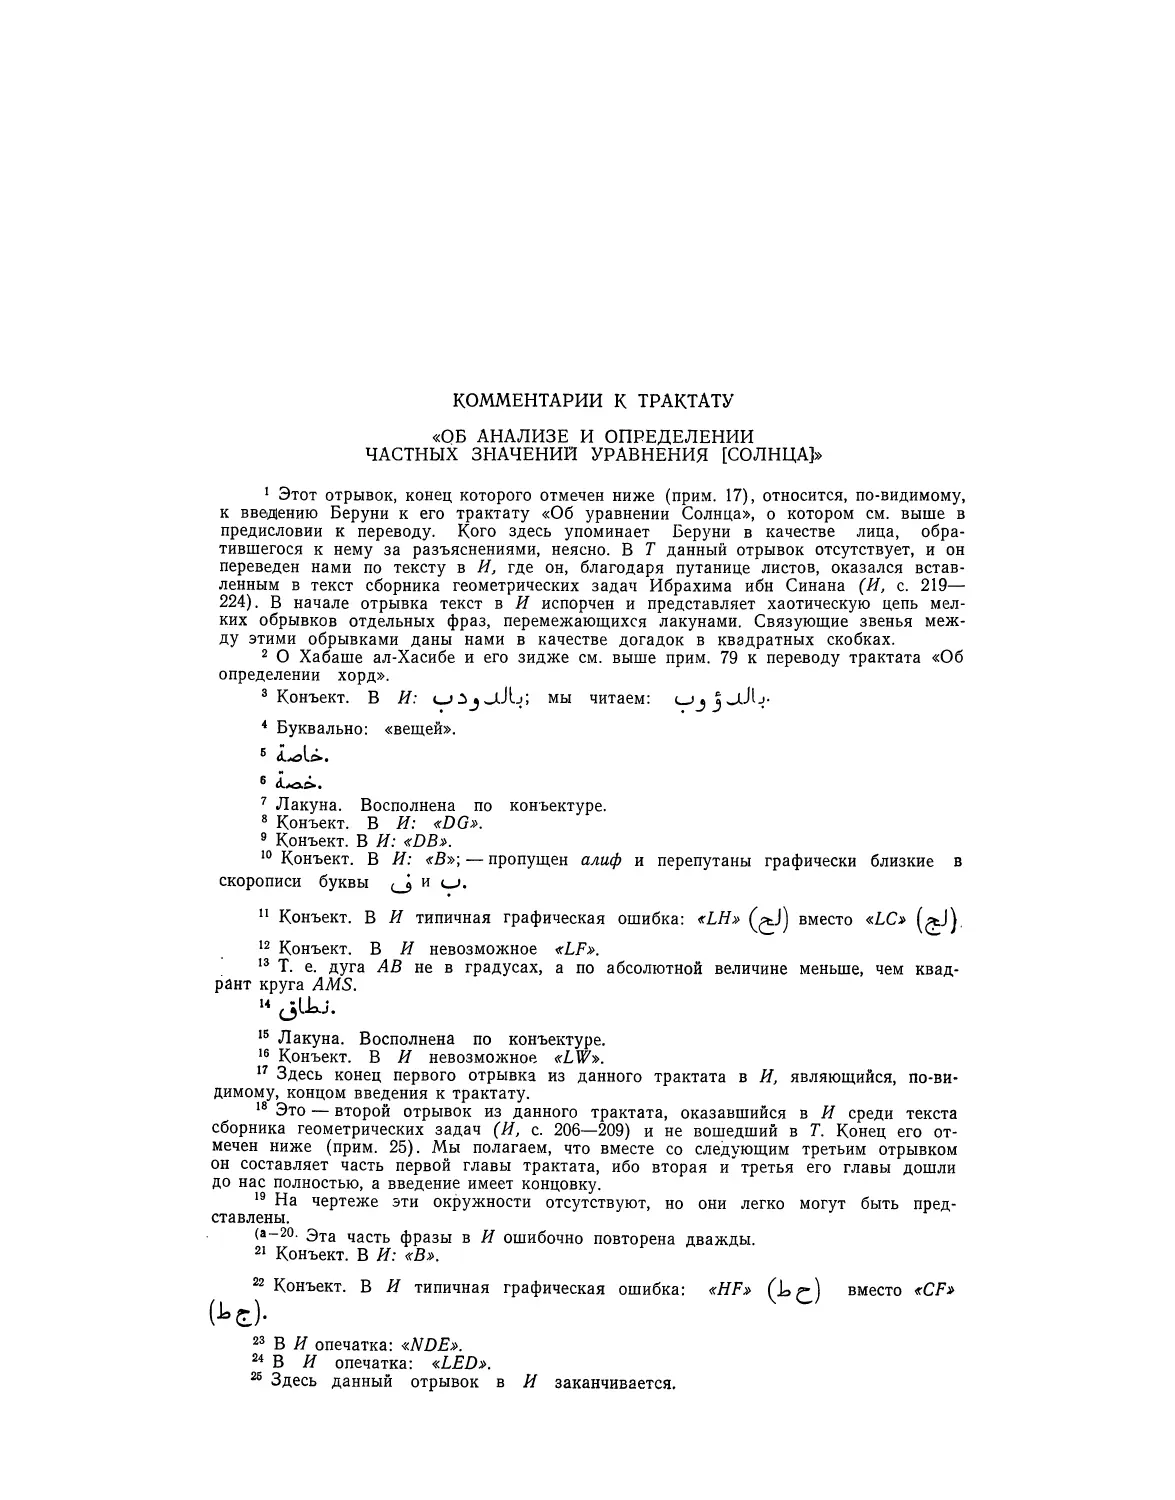 Комментарии к трактату «Об анализе и определении частных значений уравнения [Солнца]»